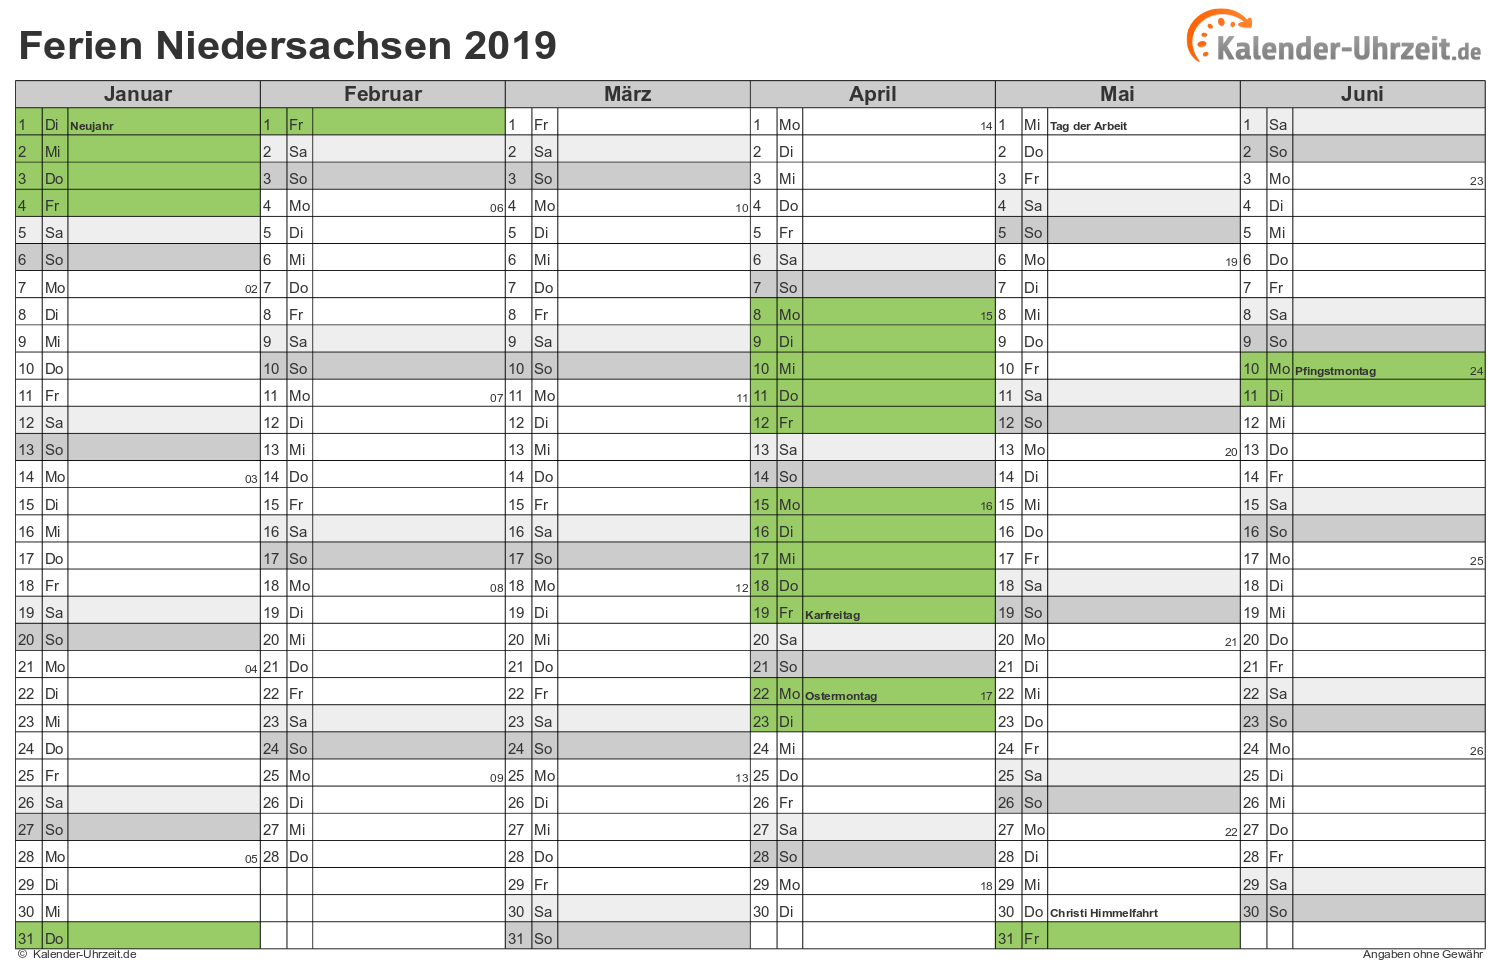 Ferien Niedersachsen 2019 - Ferienkalender zum Ausdrucken